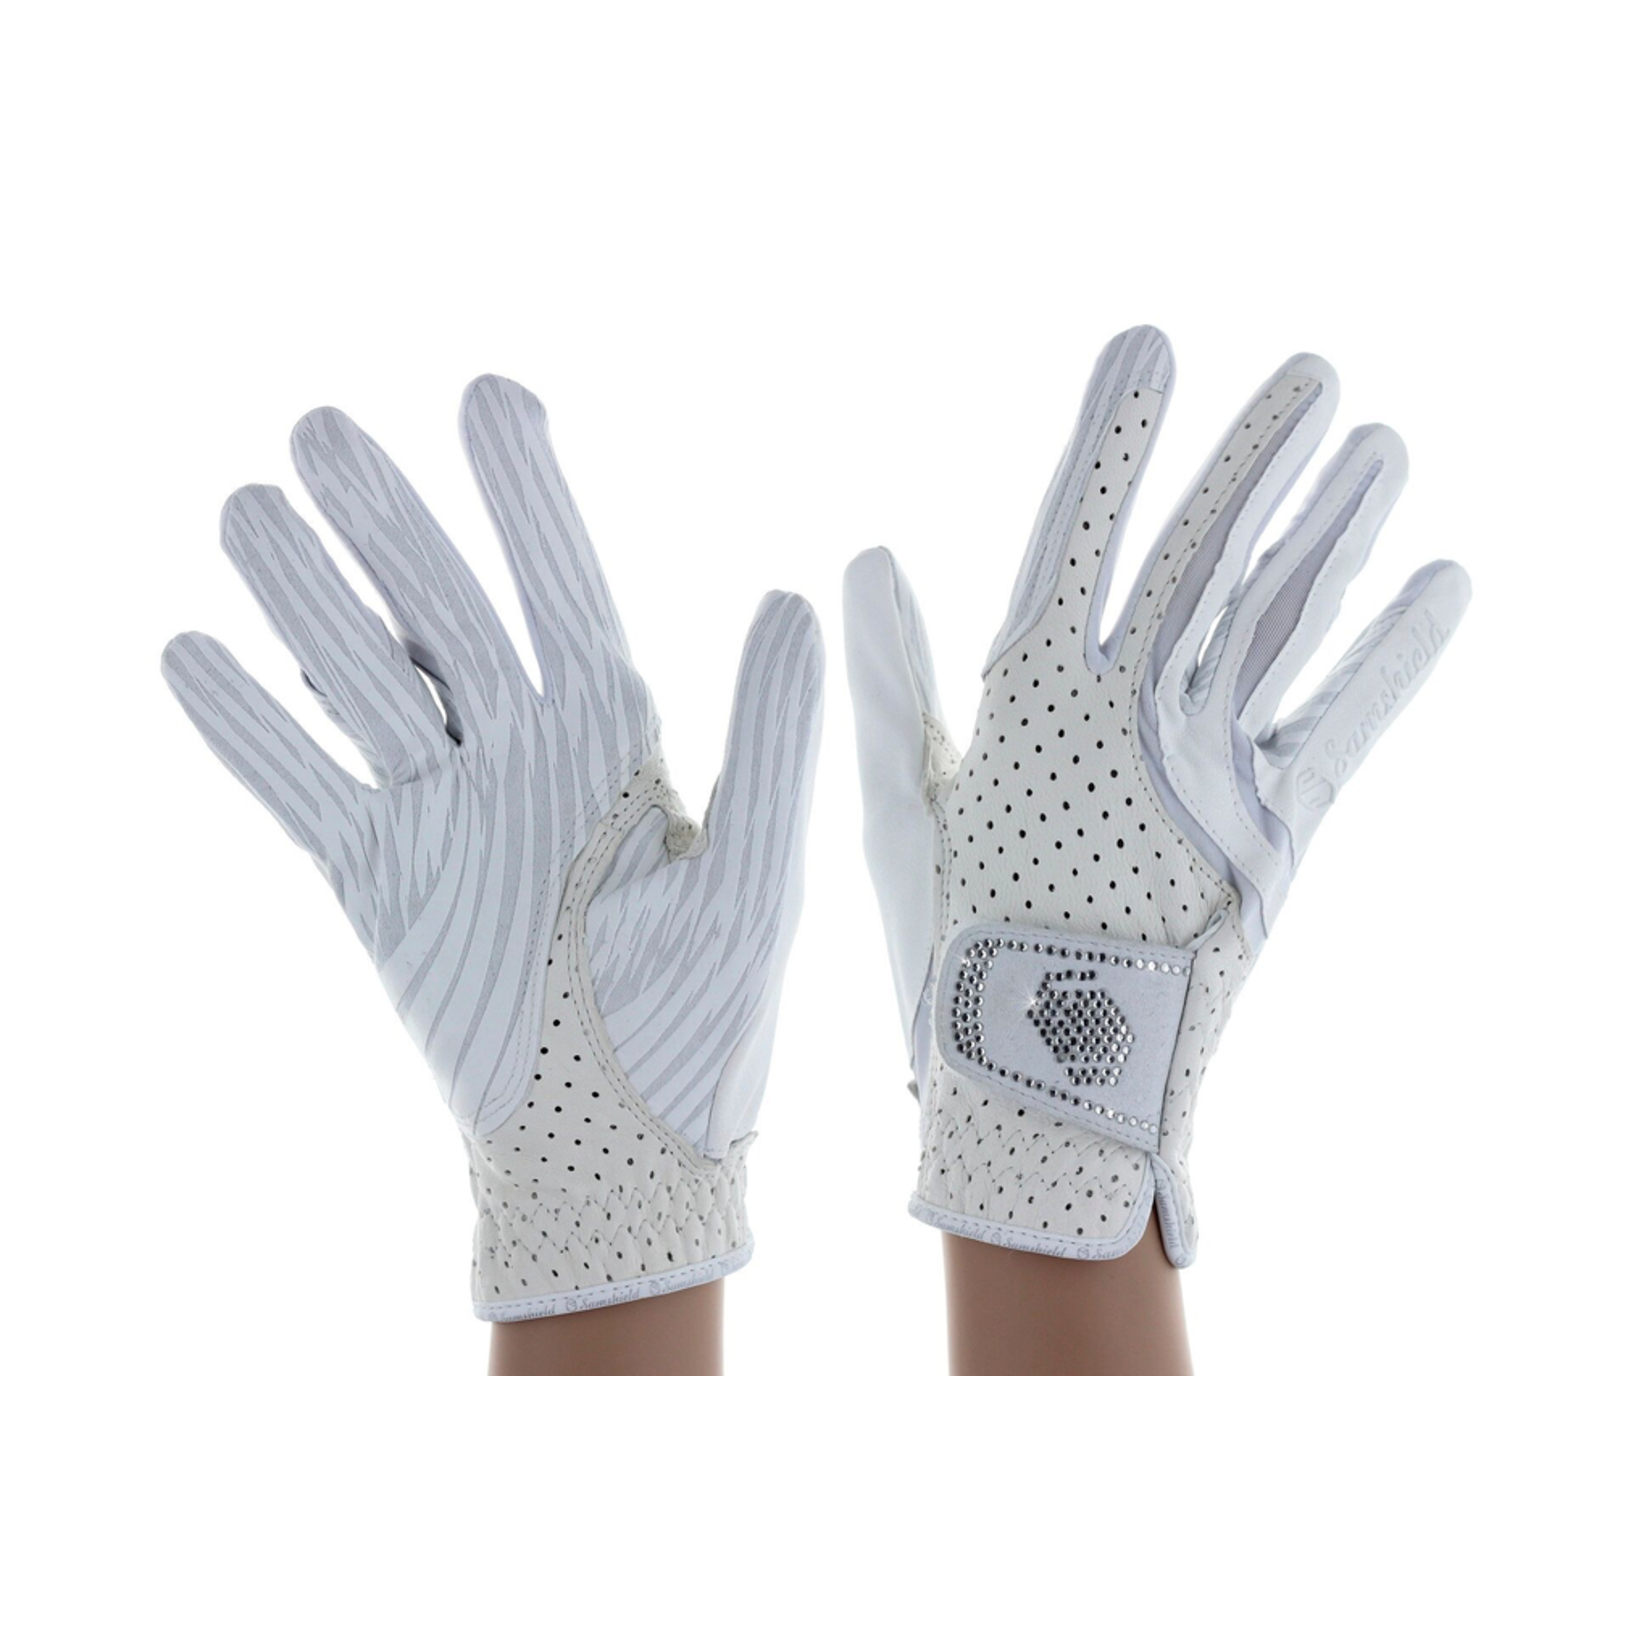 Samshield Samshield V-Skin Swarovski Gloves